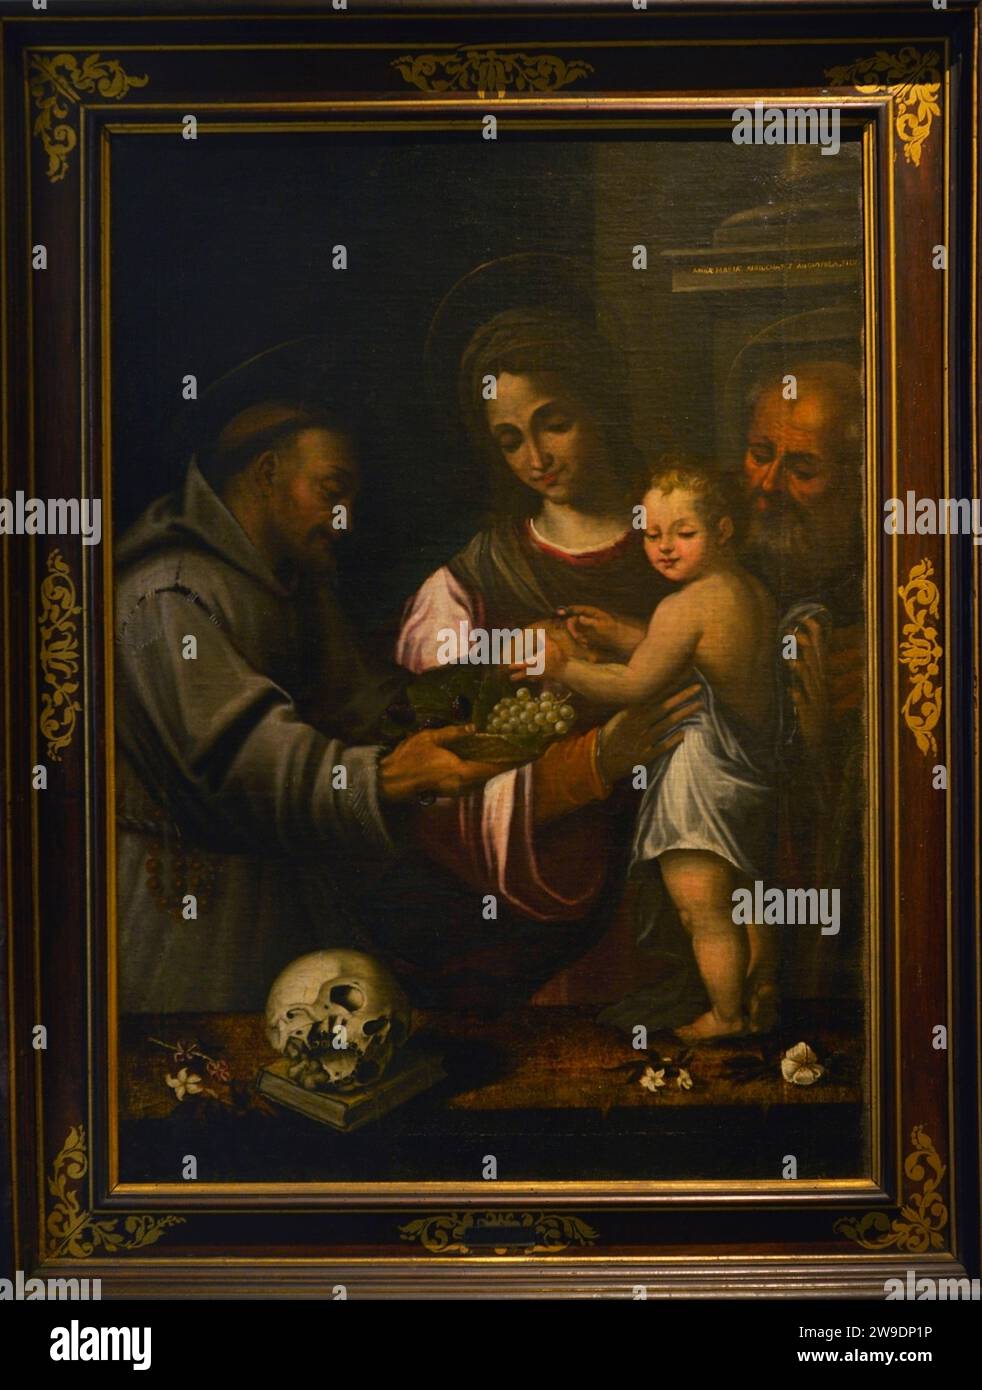 Pietro Martine Alberti (1555-1611). Italienischer Maler. Heilige Familie mit dem Heiligen Franziskus. Öl auf Leinwand. Museo Civico Ala Ponzone. Cremona. Lombardei. Italien. Stockfoto